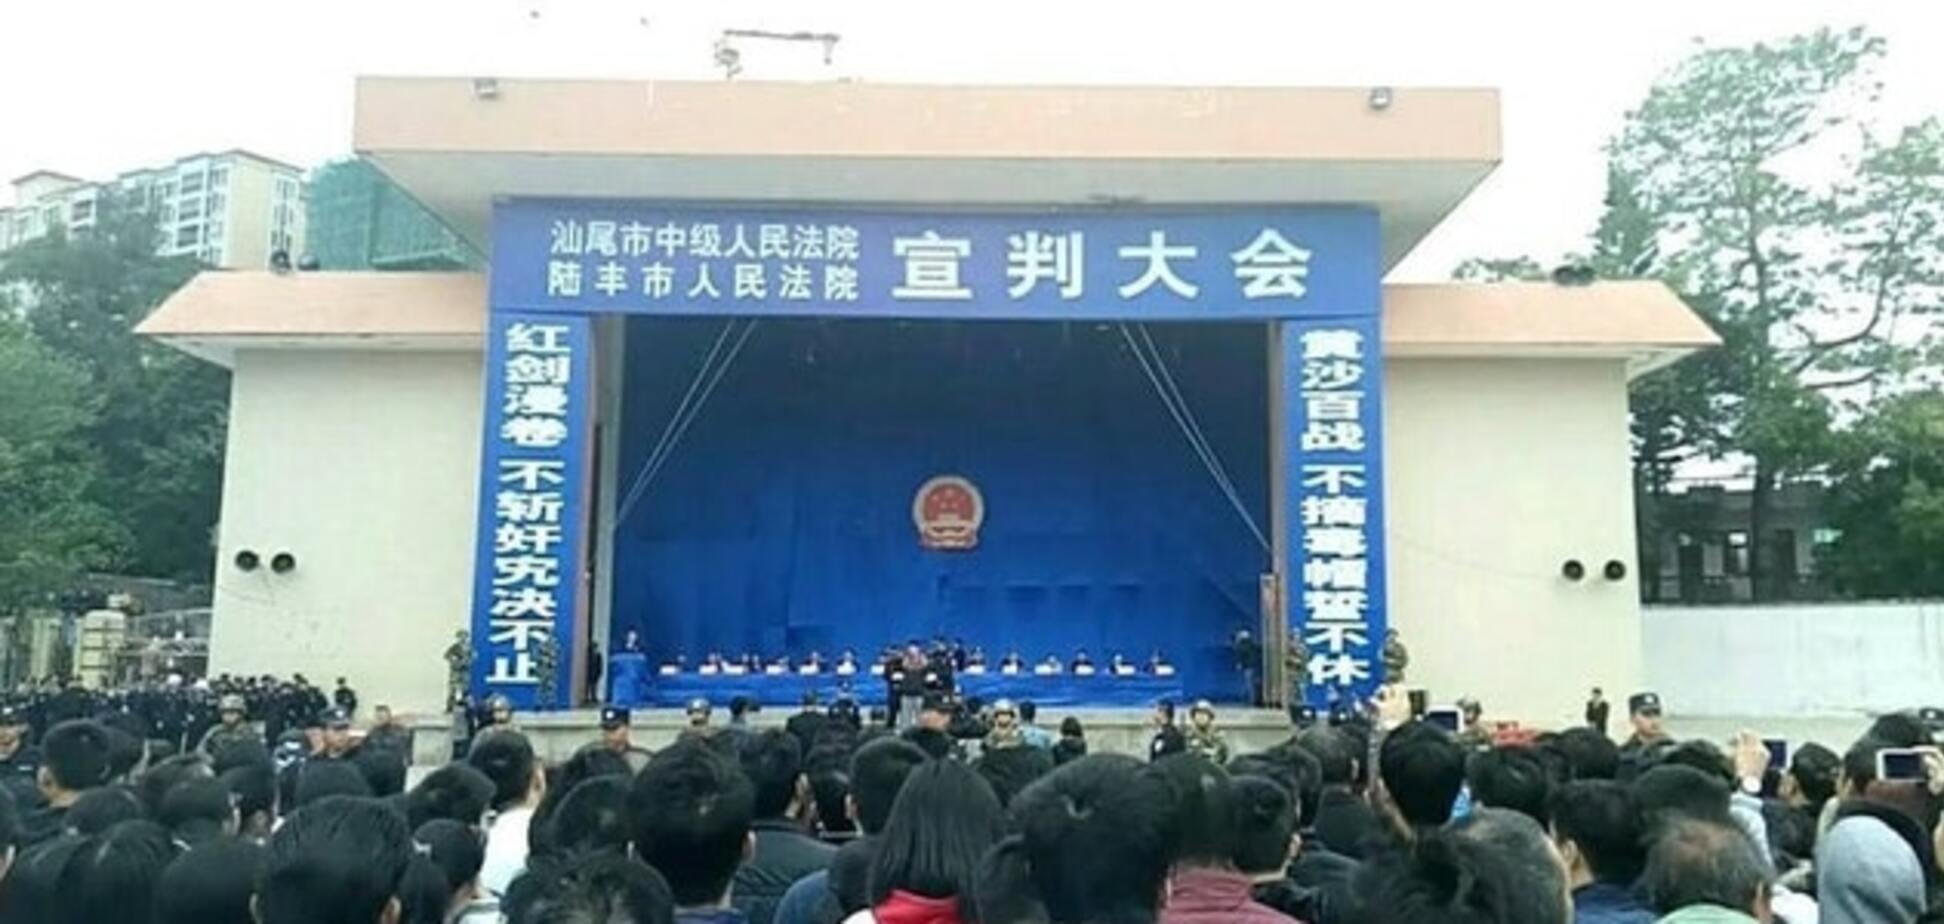 Запрошували через соцмережі: в Китаї з публічної страти влаштували шоу